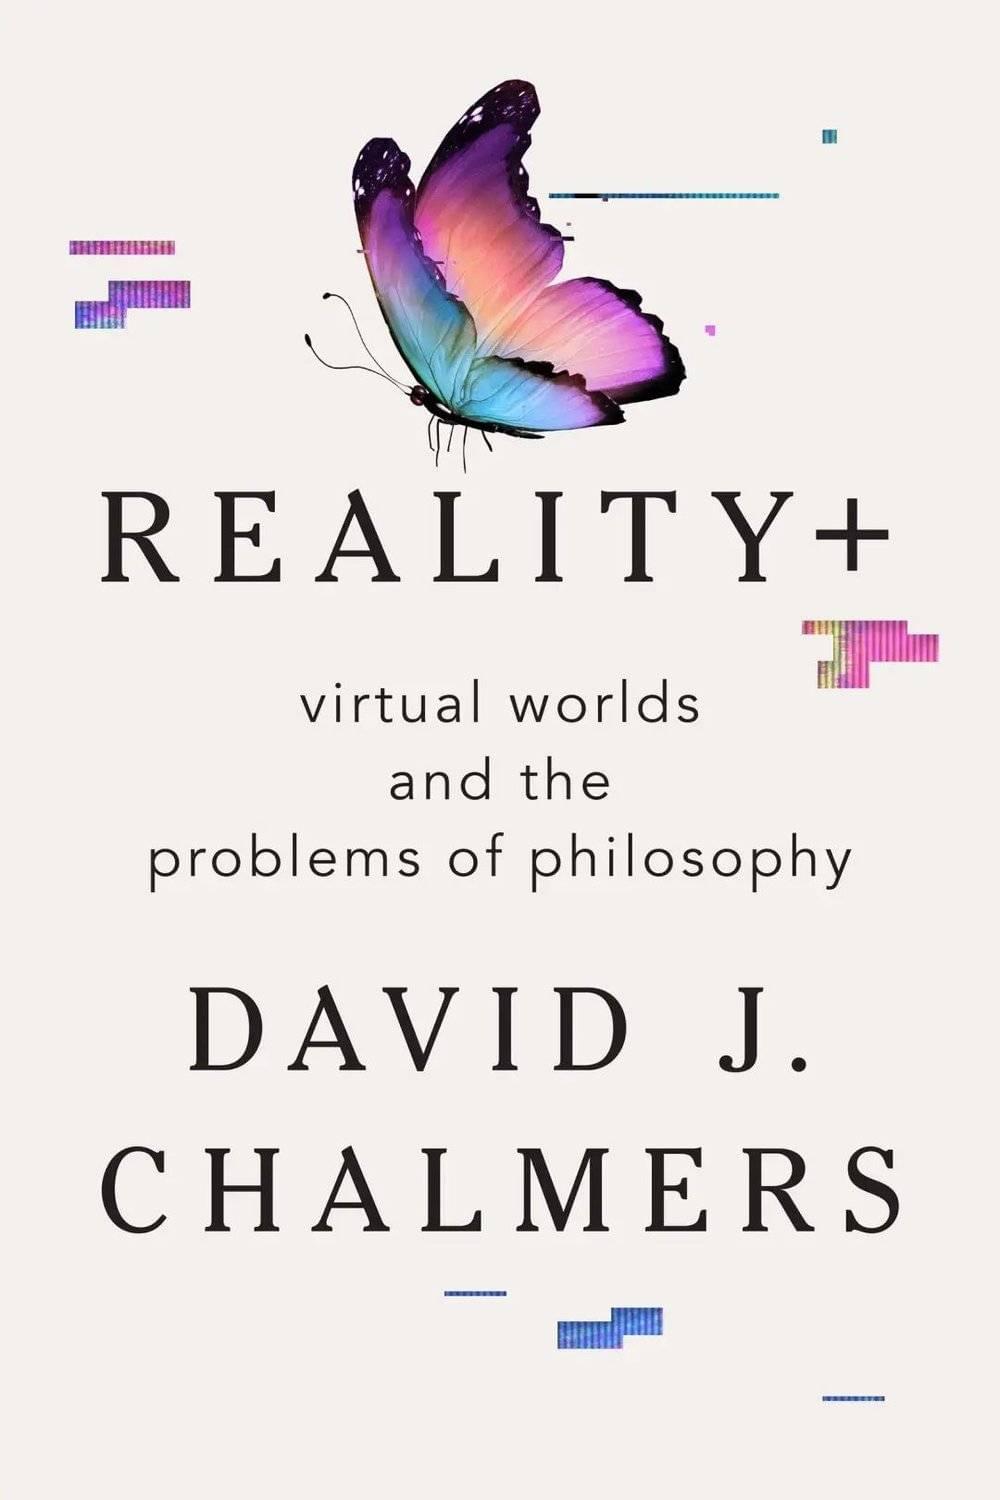 《现实+：虚拟世界和哲学问题》（<em>Reality+: Virtual Worlds and the Problems of Philosophy</em>），W. W. NORTON & COMPANY